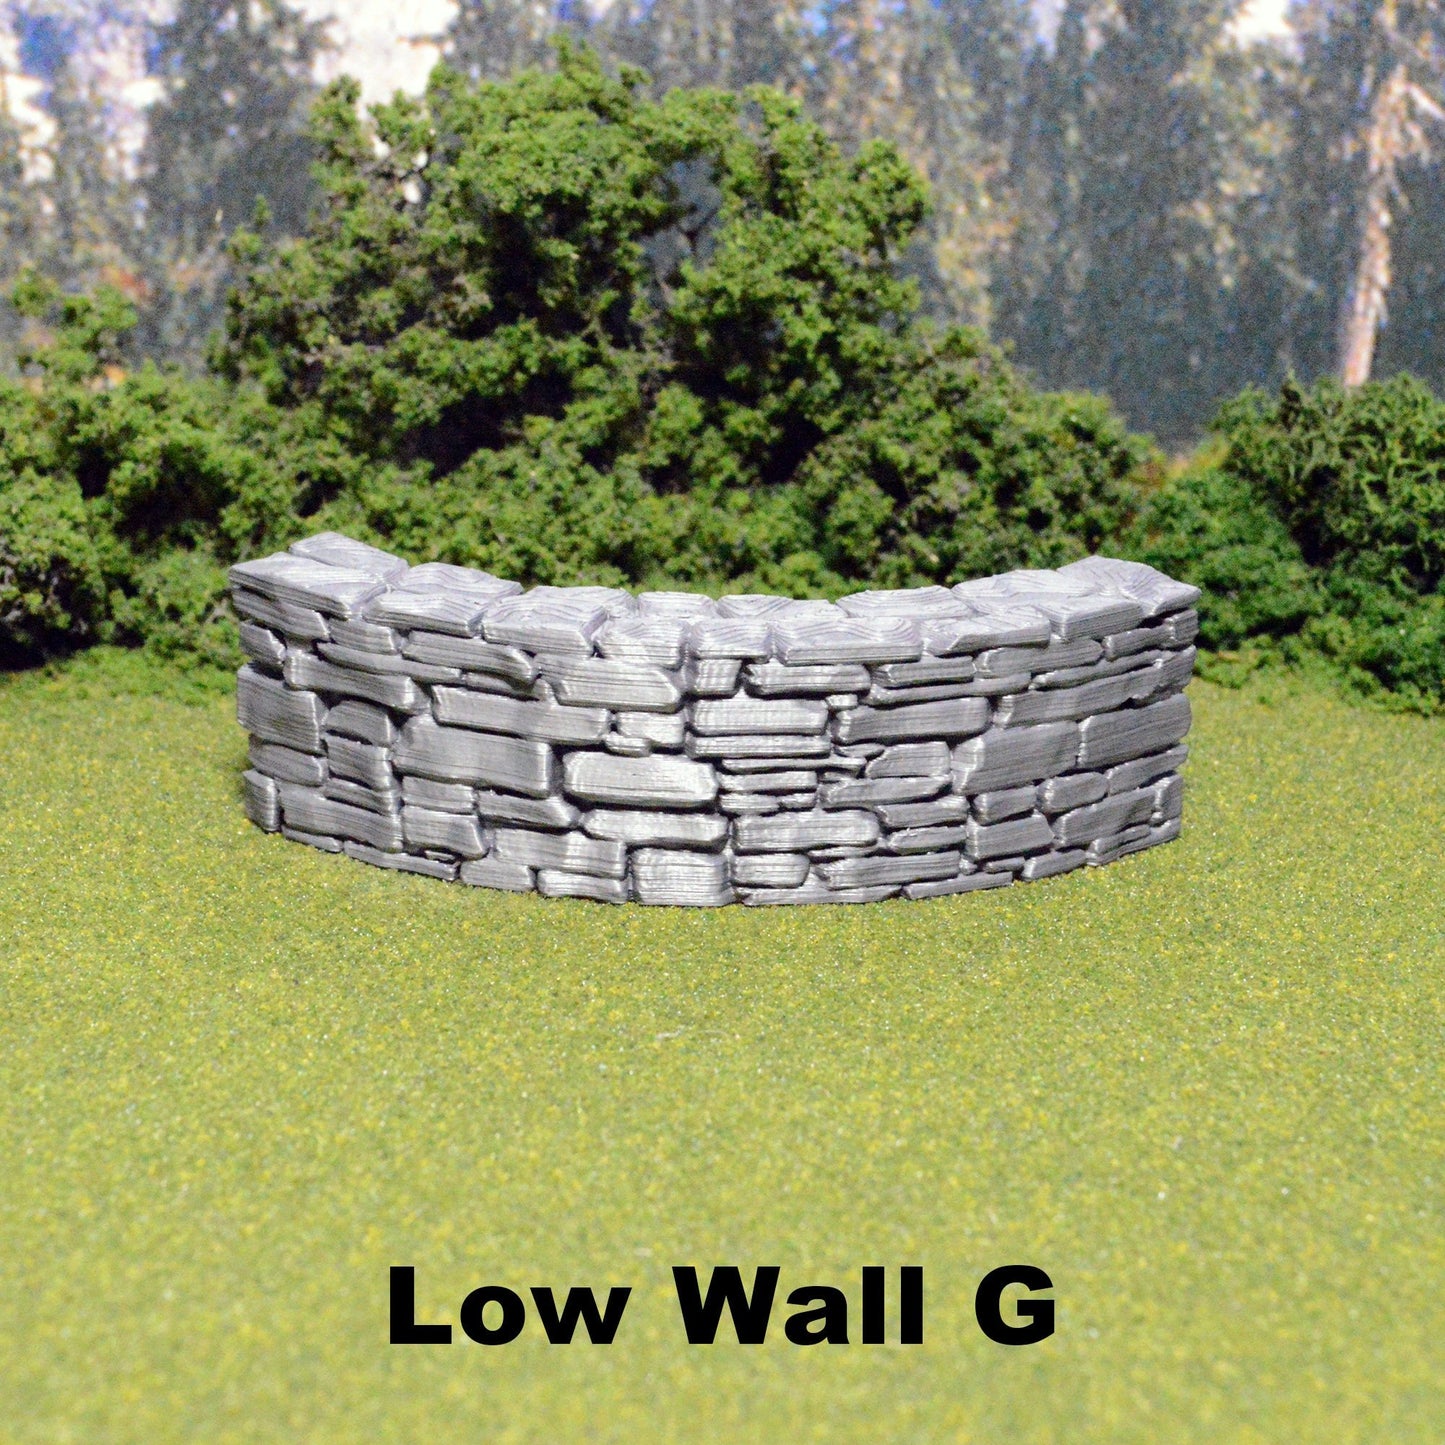 Schist Low Wall Tiles 28mm, Modular OpenLOCK Building Tiles, DnD Stone Wall Tiles, D&D Village Terrain